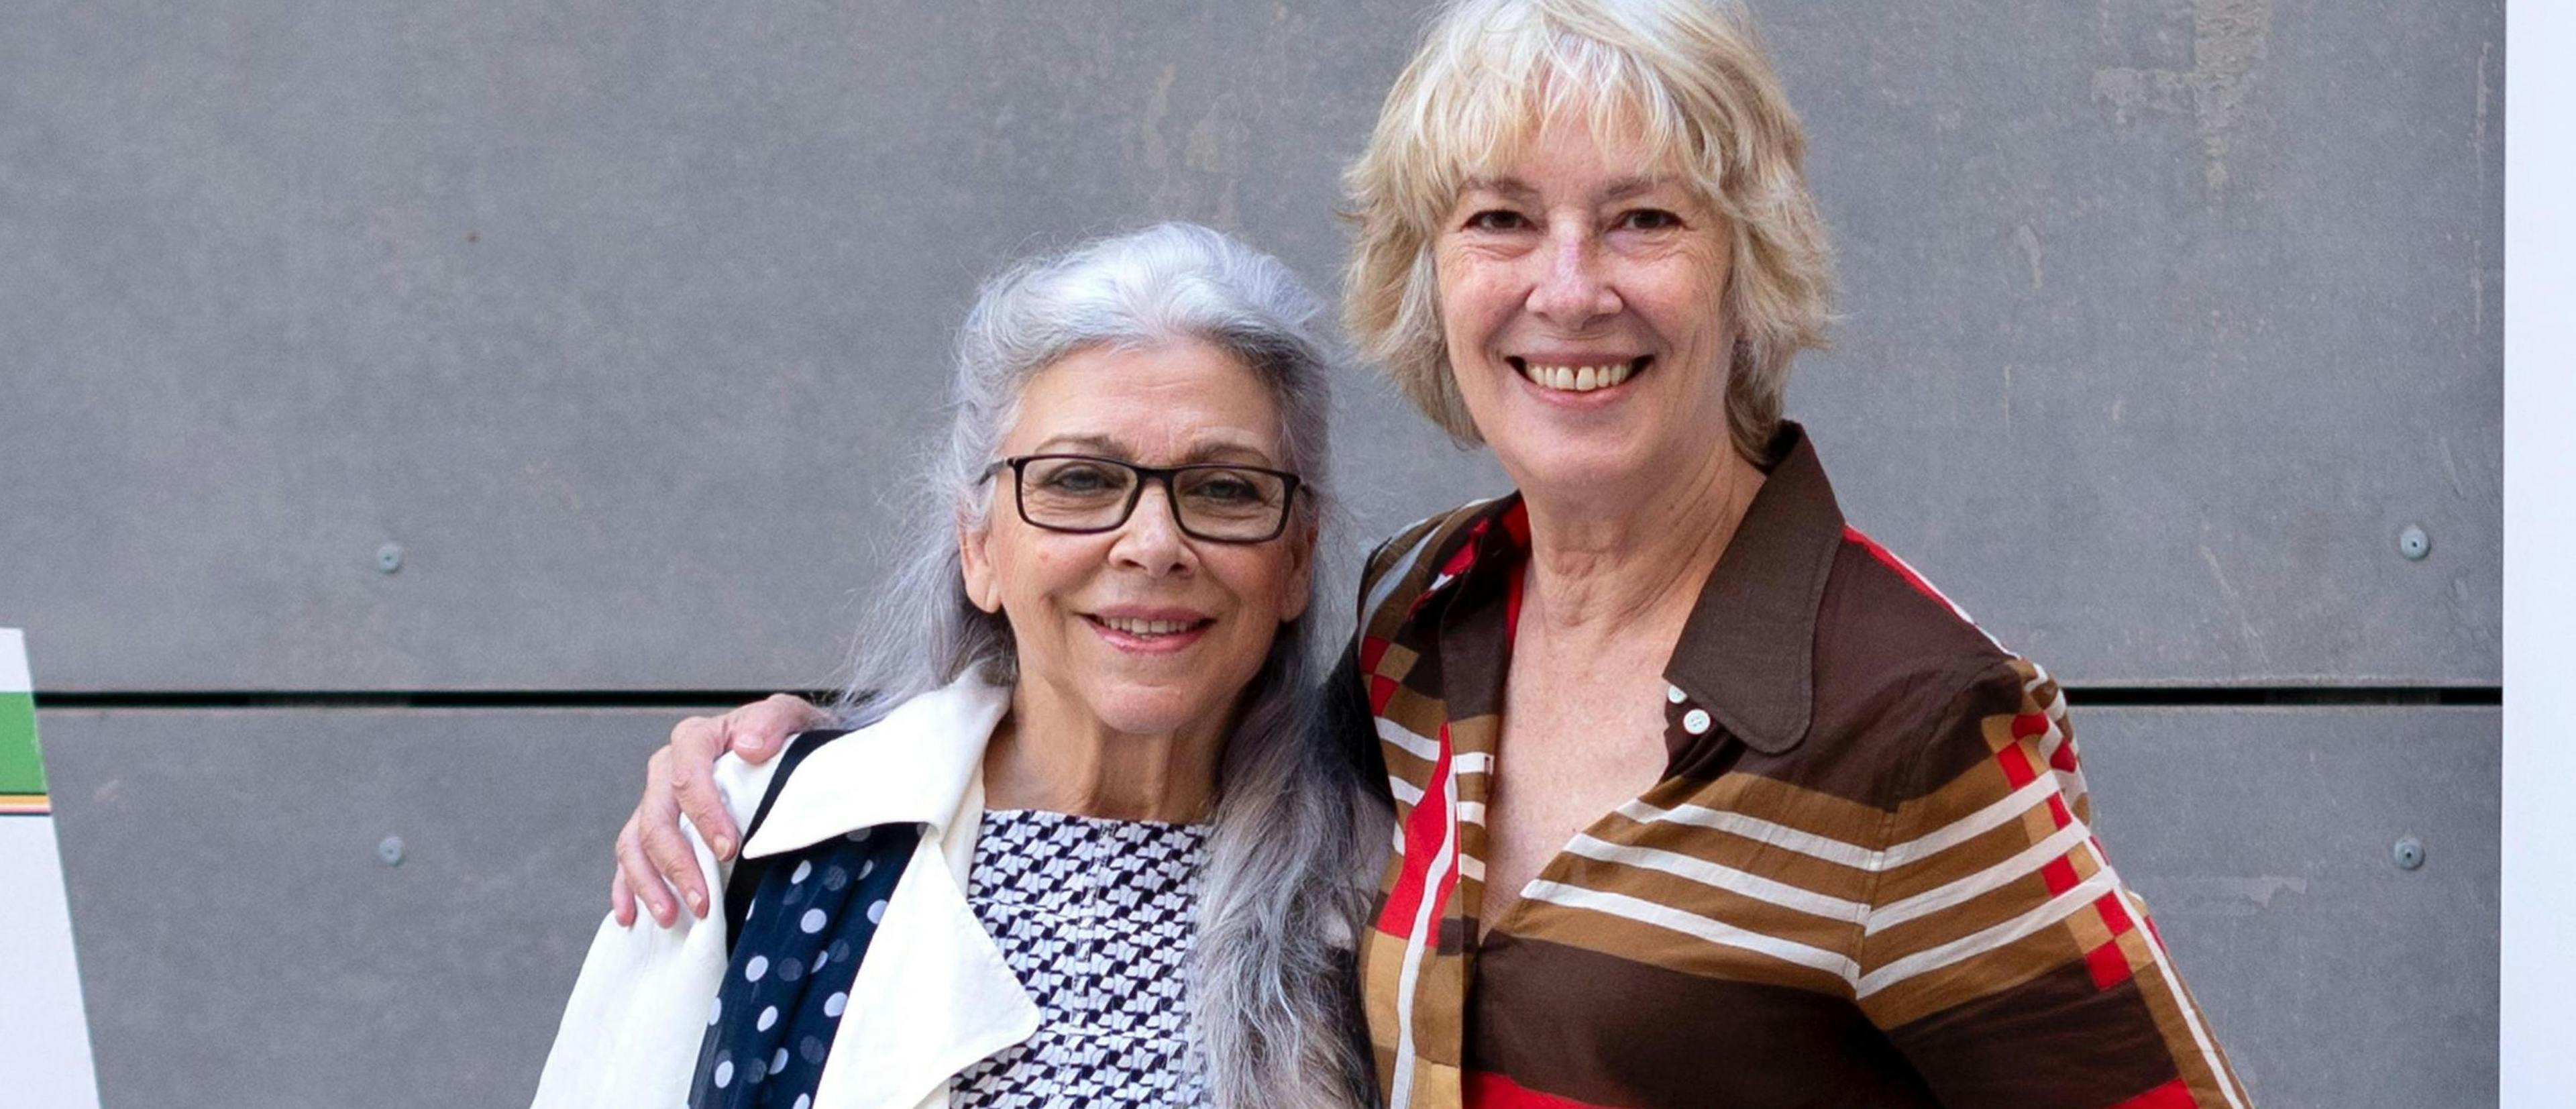 Las actrices Kiti Mánver y Susi Sánchez, vicepresidenta de la Academia de Cine, durante la presentación de la edición 68 de la Seminci